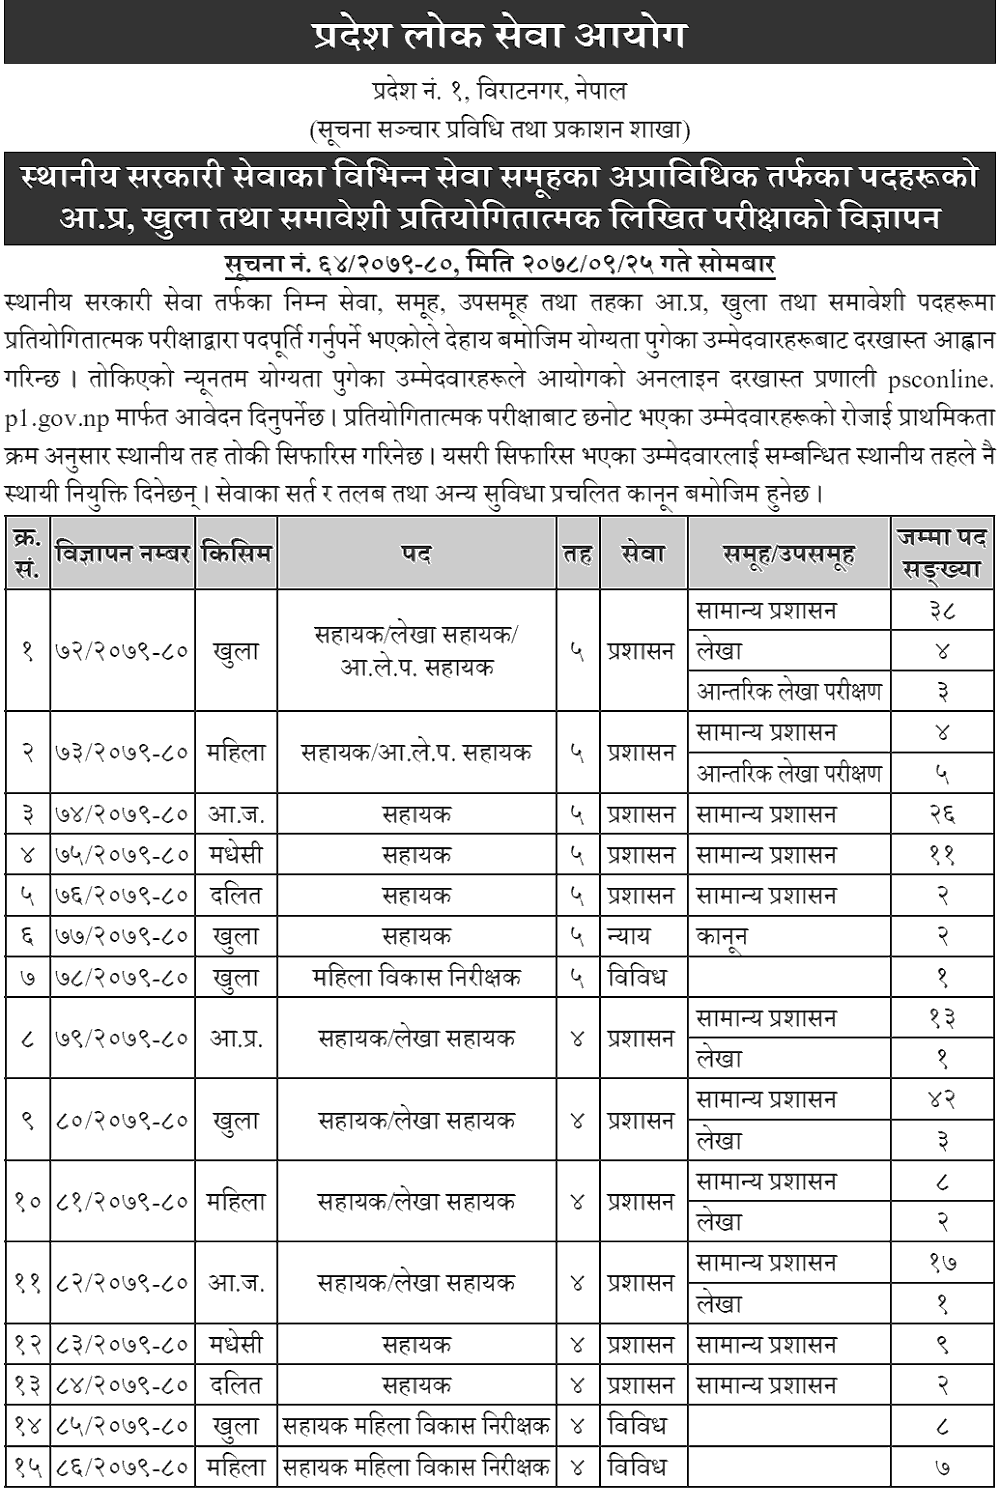 Pradesh Lok Sewa Aayog, Pradesh No. 1, Biratnagar han been published vacancy for Assistant 4th and 5th level.